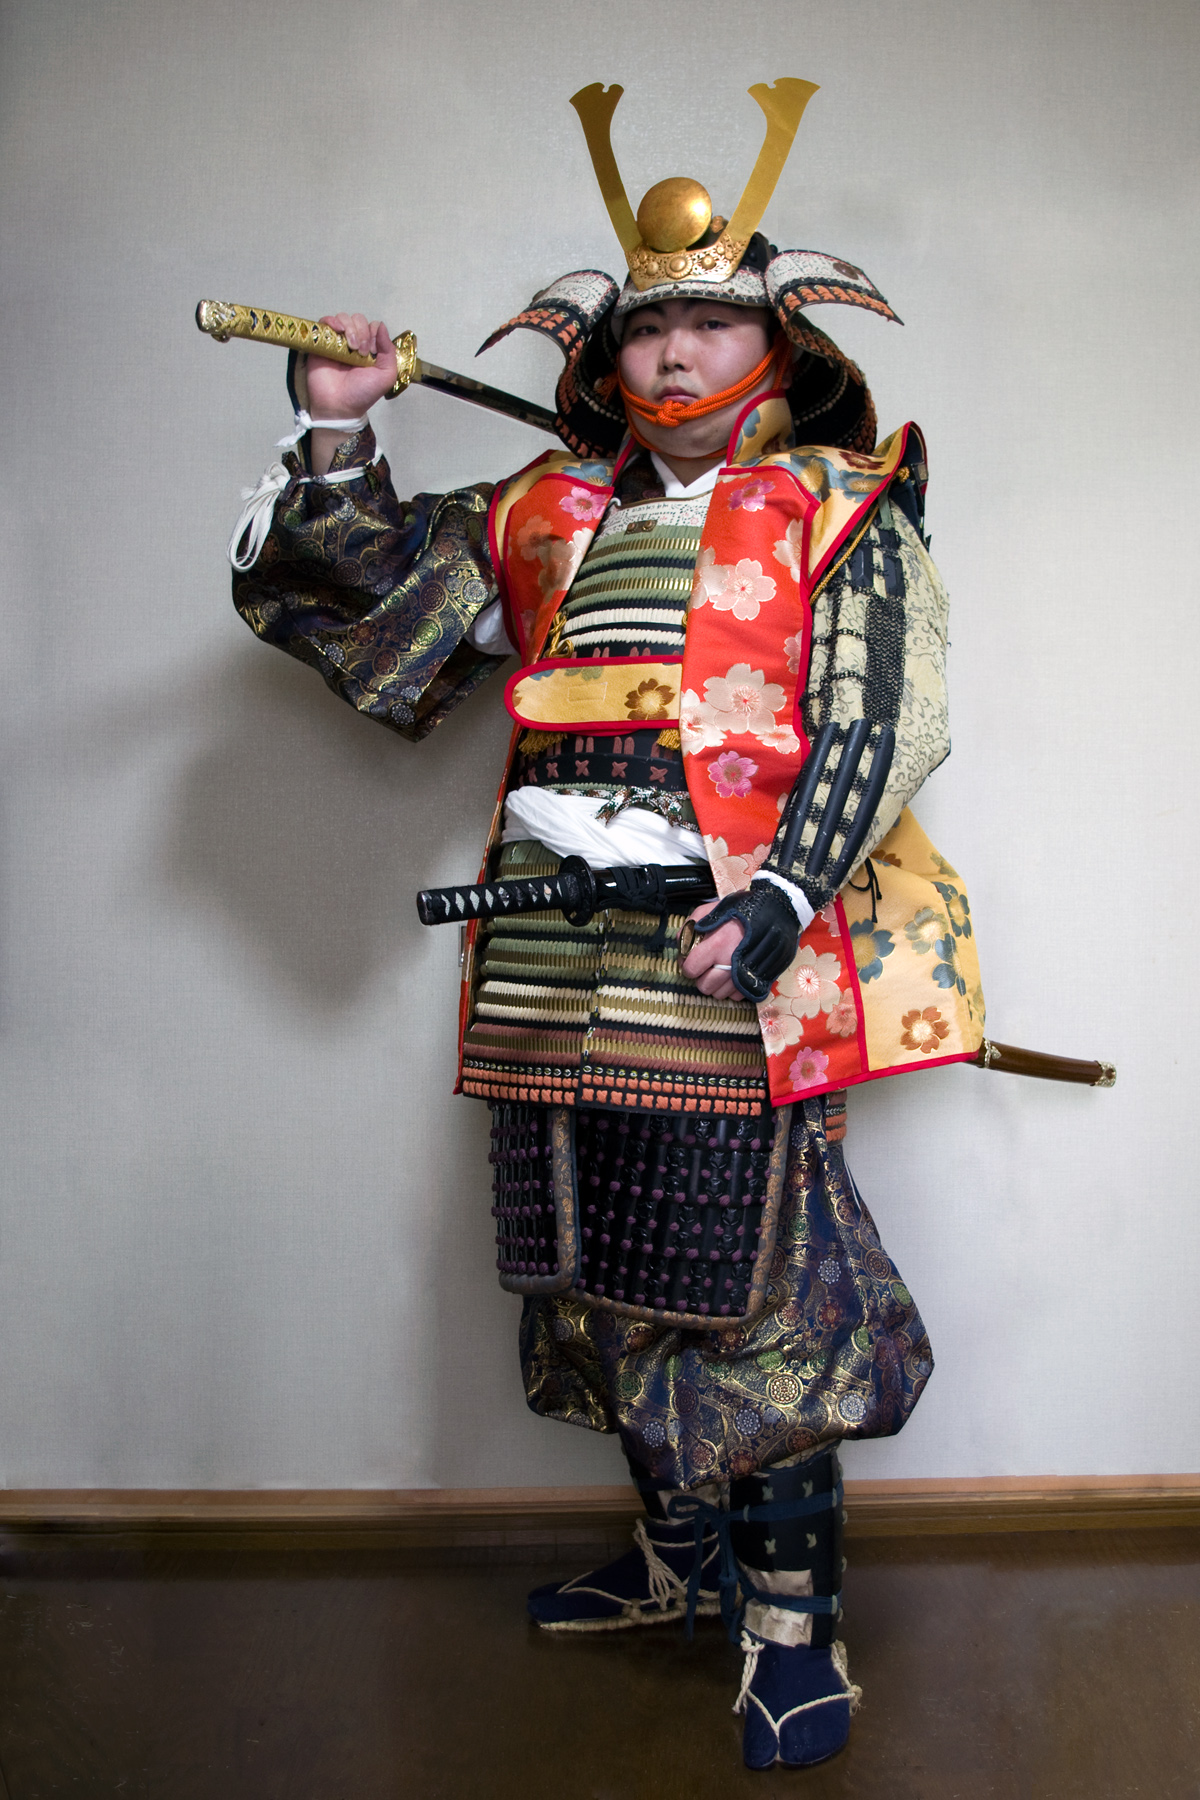 Armored Samurai with Jin-Haori